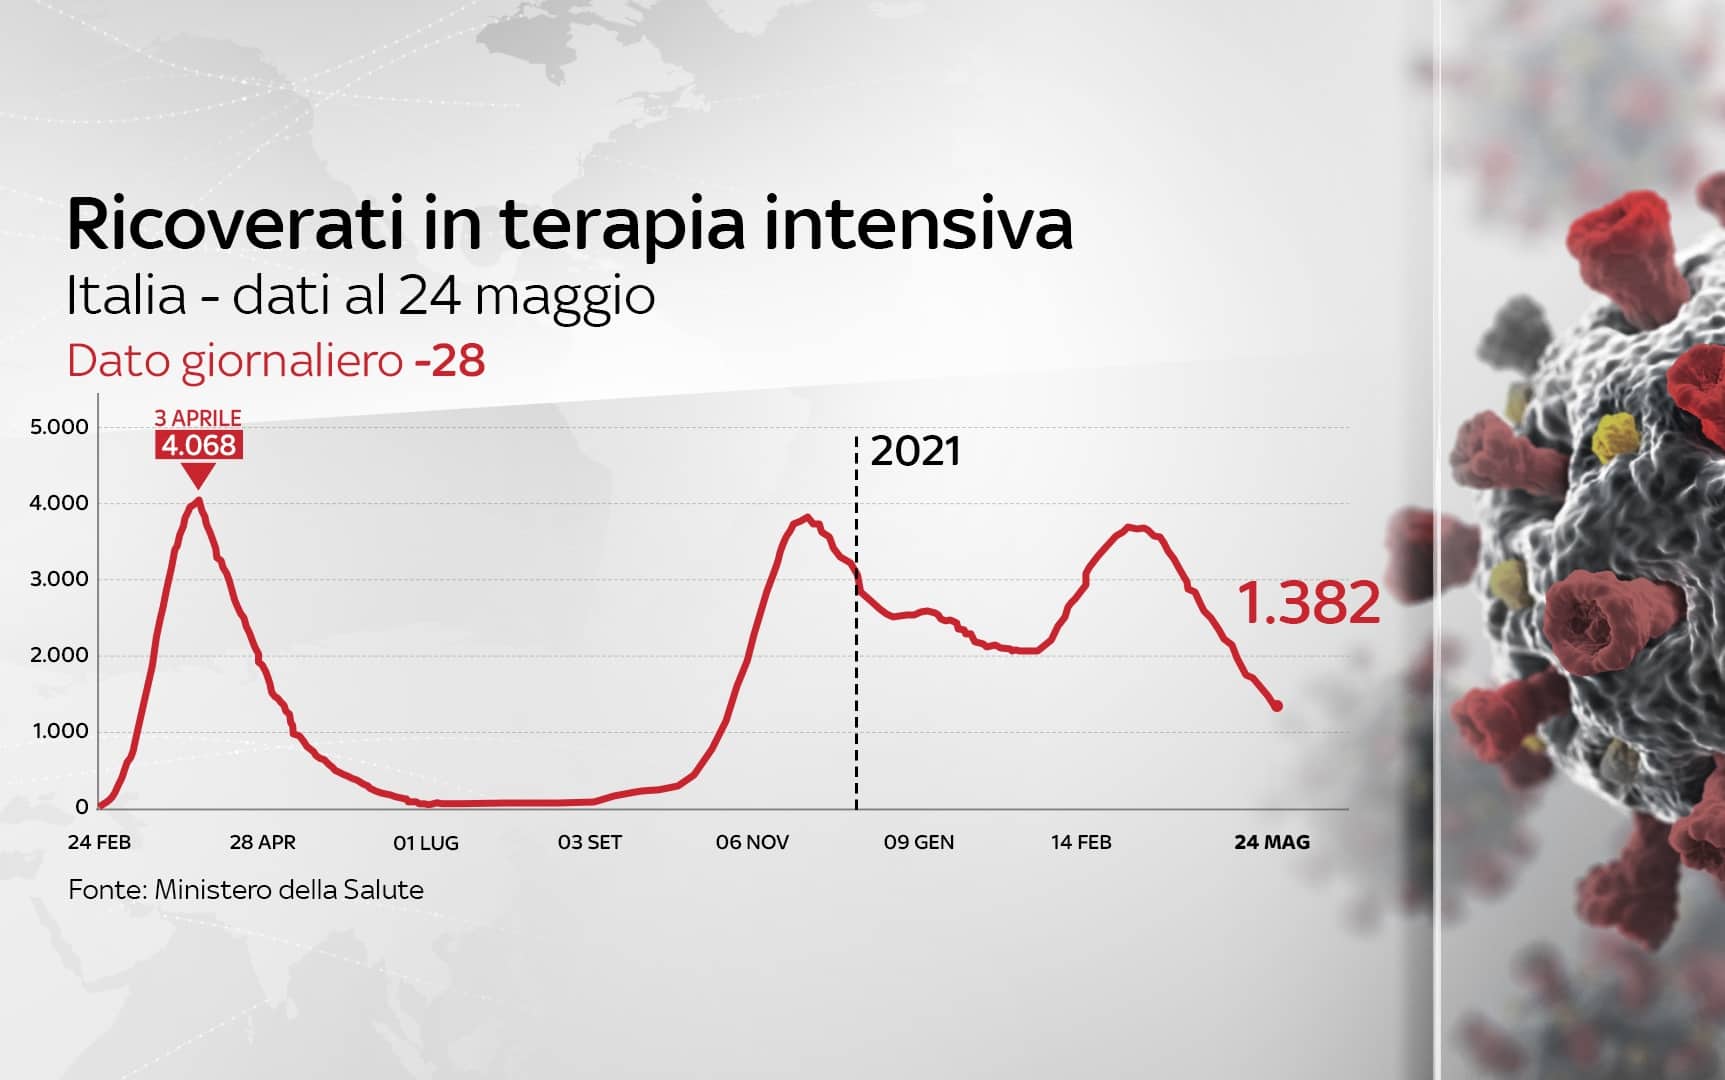 Grafica sull'andamento dei ricoveri in terapia intensiva in Italia